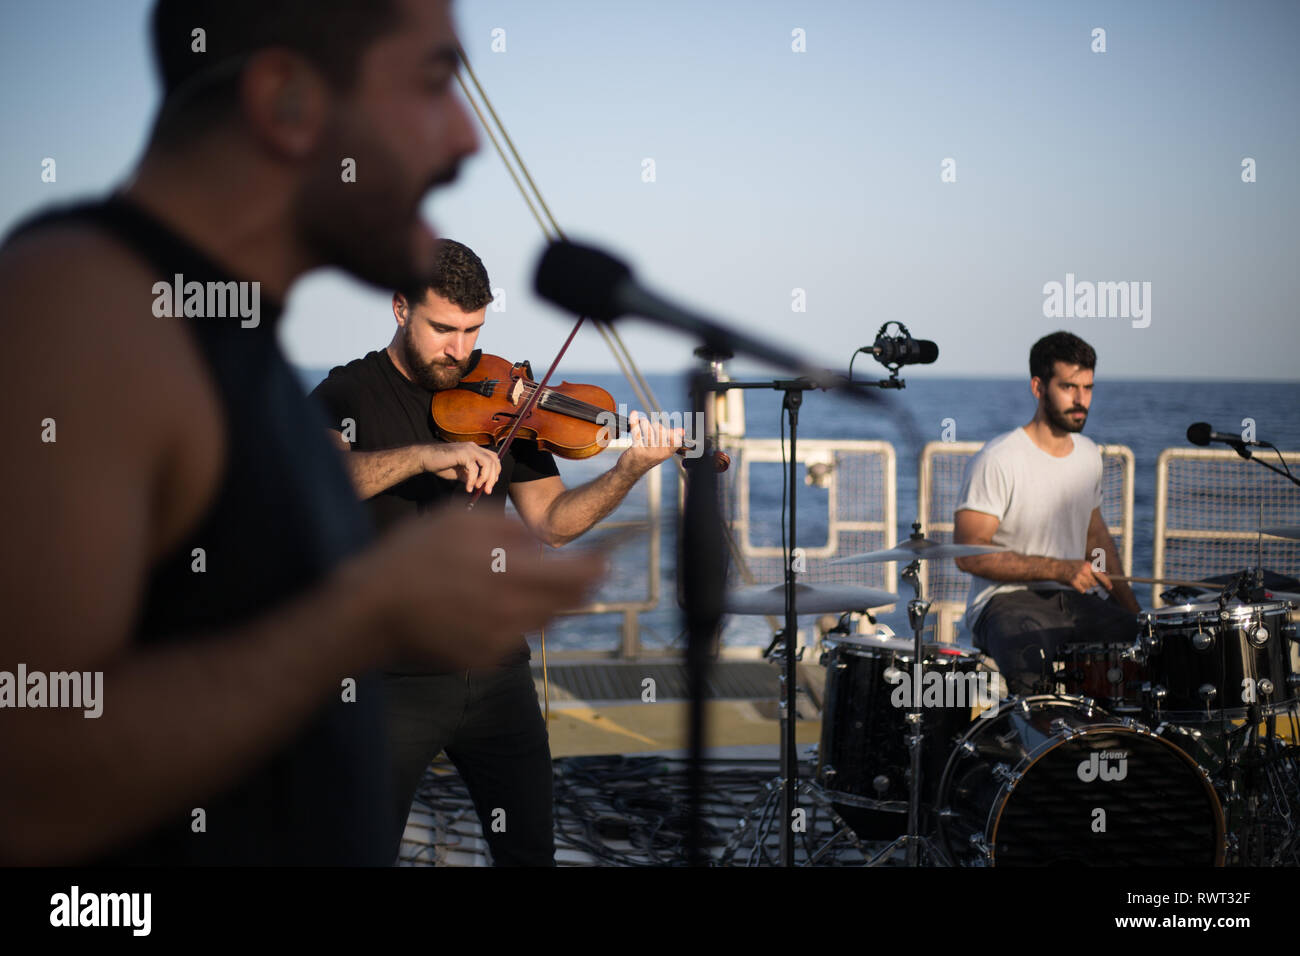 Banda libanesa Mashrou' Leila configurar y preparar para grabar una canción a bordo del barco de Greenpeace Rainbow Warrior en el sol nos une tour, el Mar Mediterráneo, el 23 de octubre de 2016. N37°55.826' E8°46.256' Foto de stock